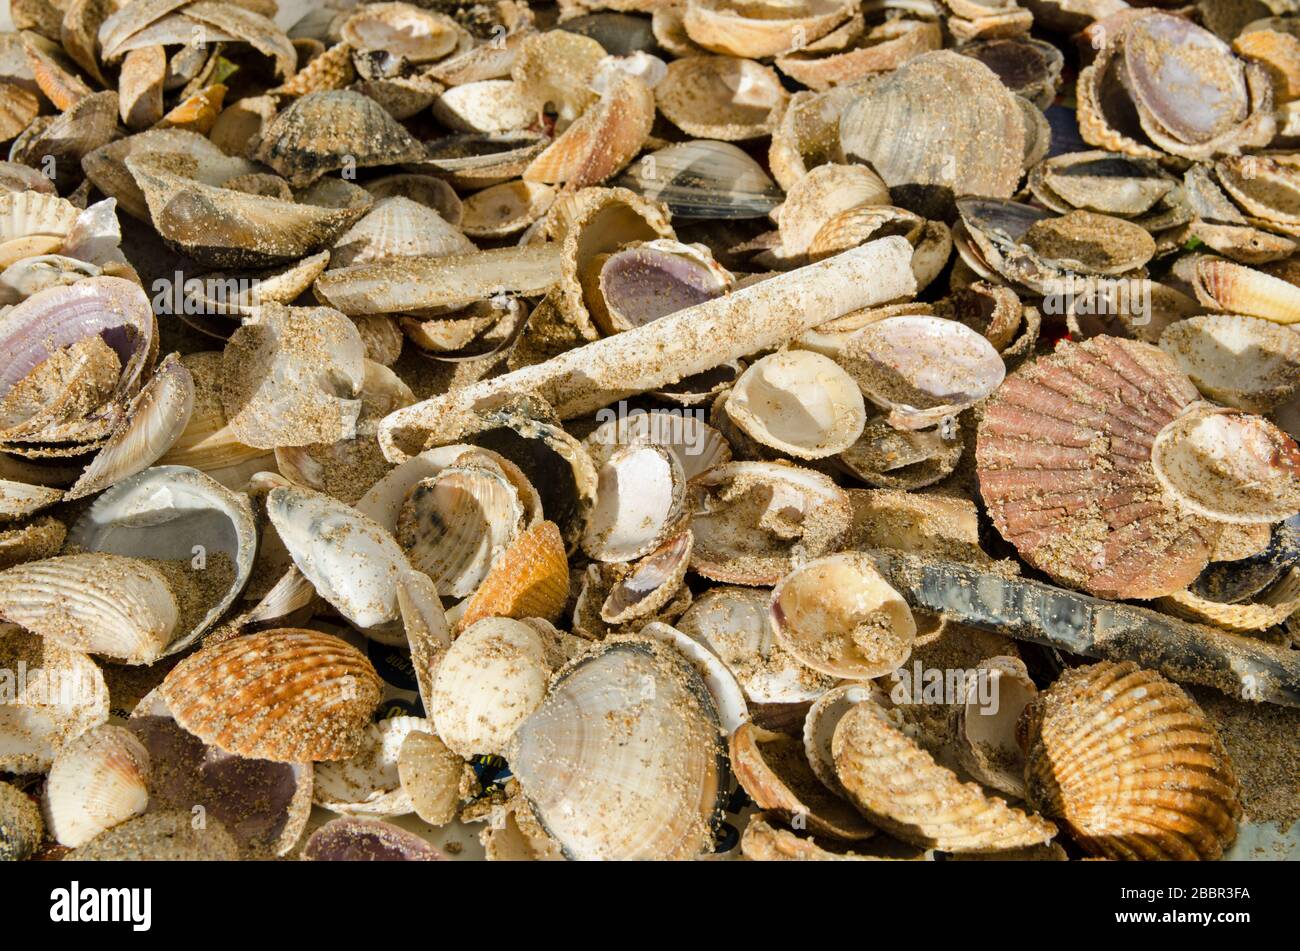 Muchas conchas se secaban al sol después de recogerse en la playa de arena de Monte Gordo, en la costa portuguesa del Algarve. Foto de stock